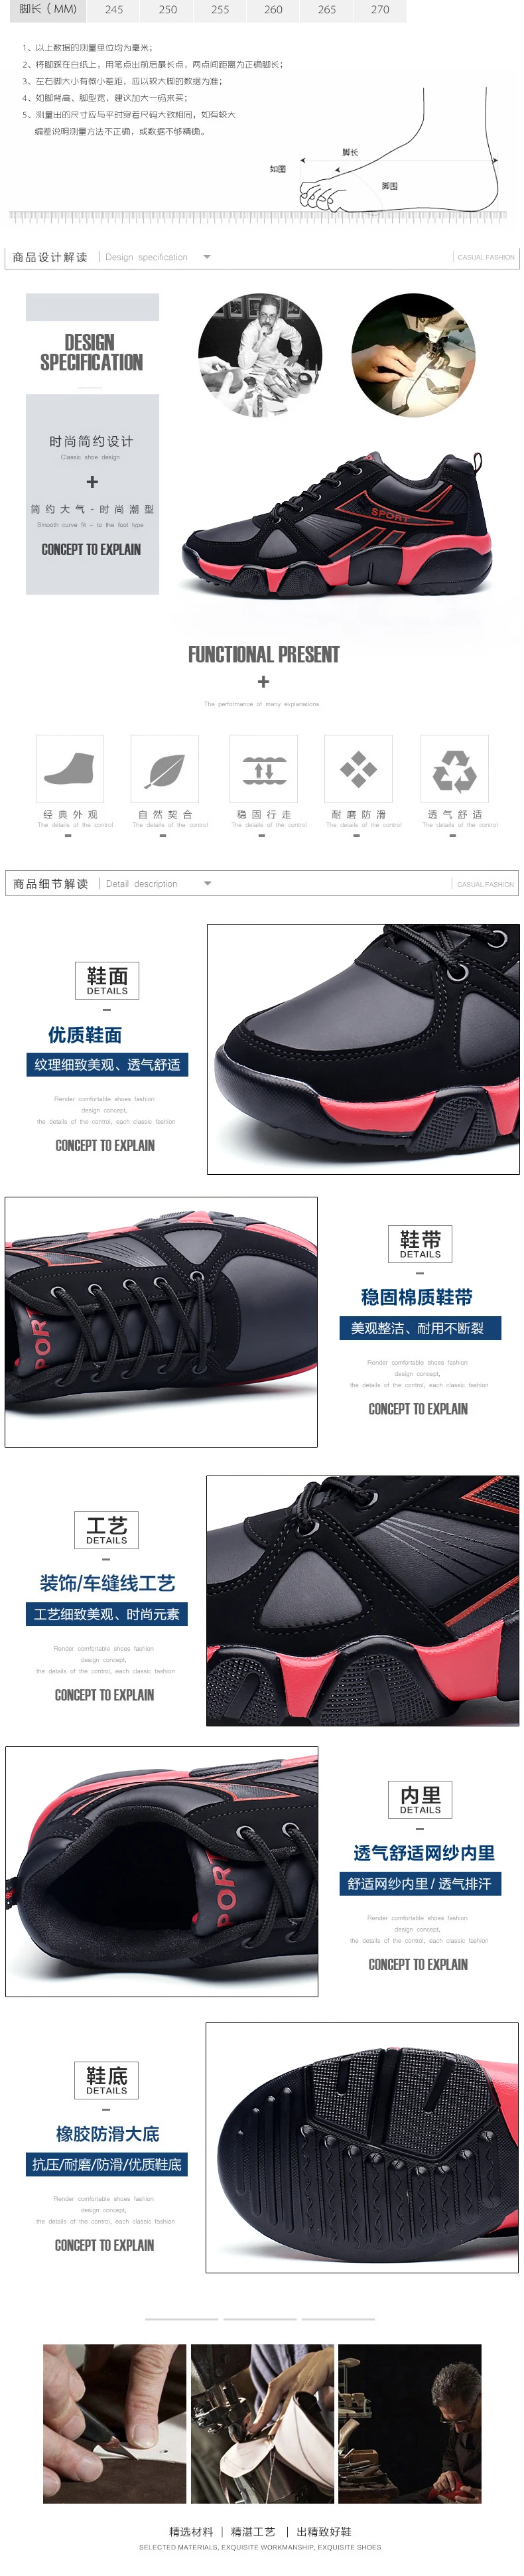 Leader Show/спортивная обувь для пар; кроссовки из сетчатого материала на резиновой подошве со шнуровкой для мужчин и женщин; Новинка; zapatos hombre; спортивная обувь; бренд года